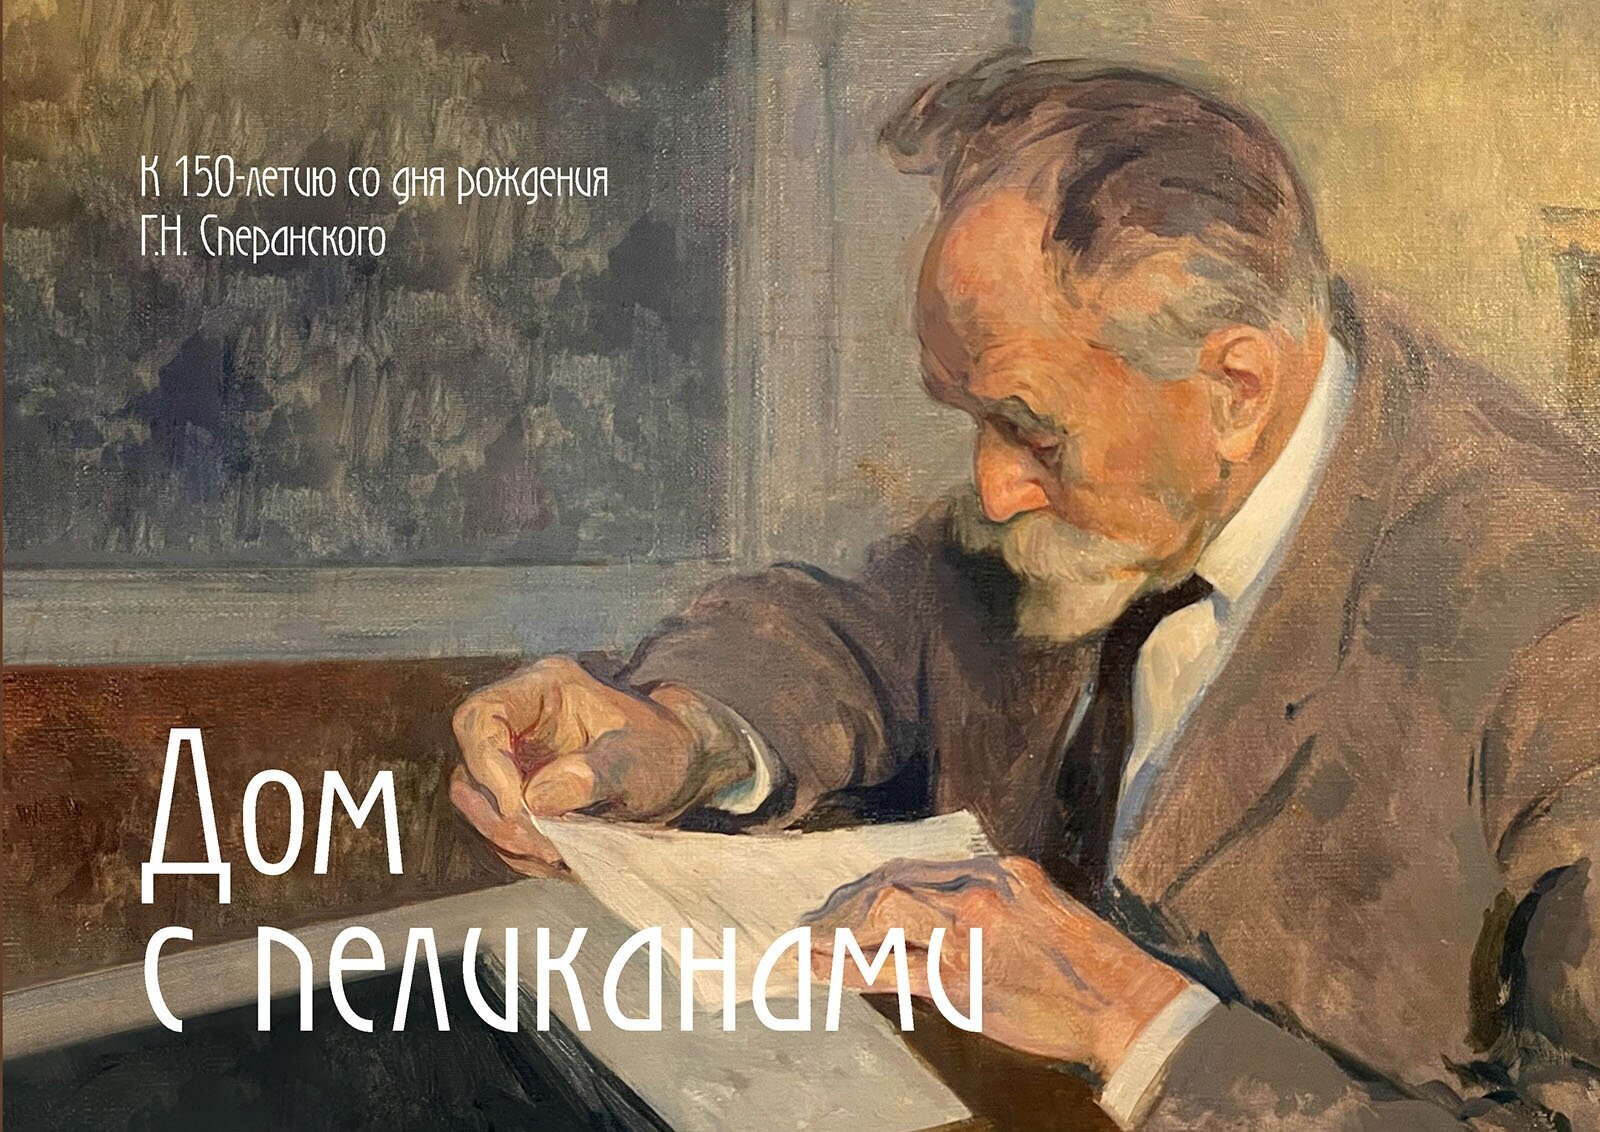 Книга "Дом с пеликанами. К 150-летию со дня рождения Г. Н. Сперанcкого"